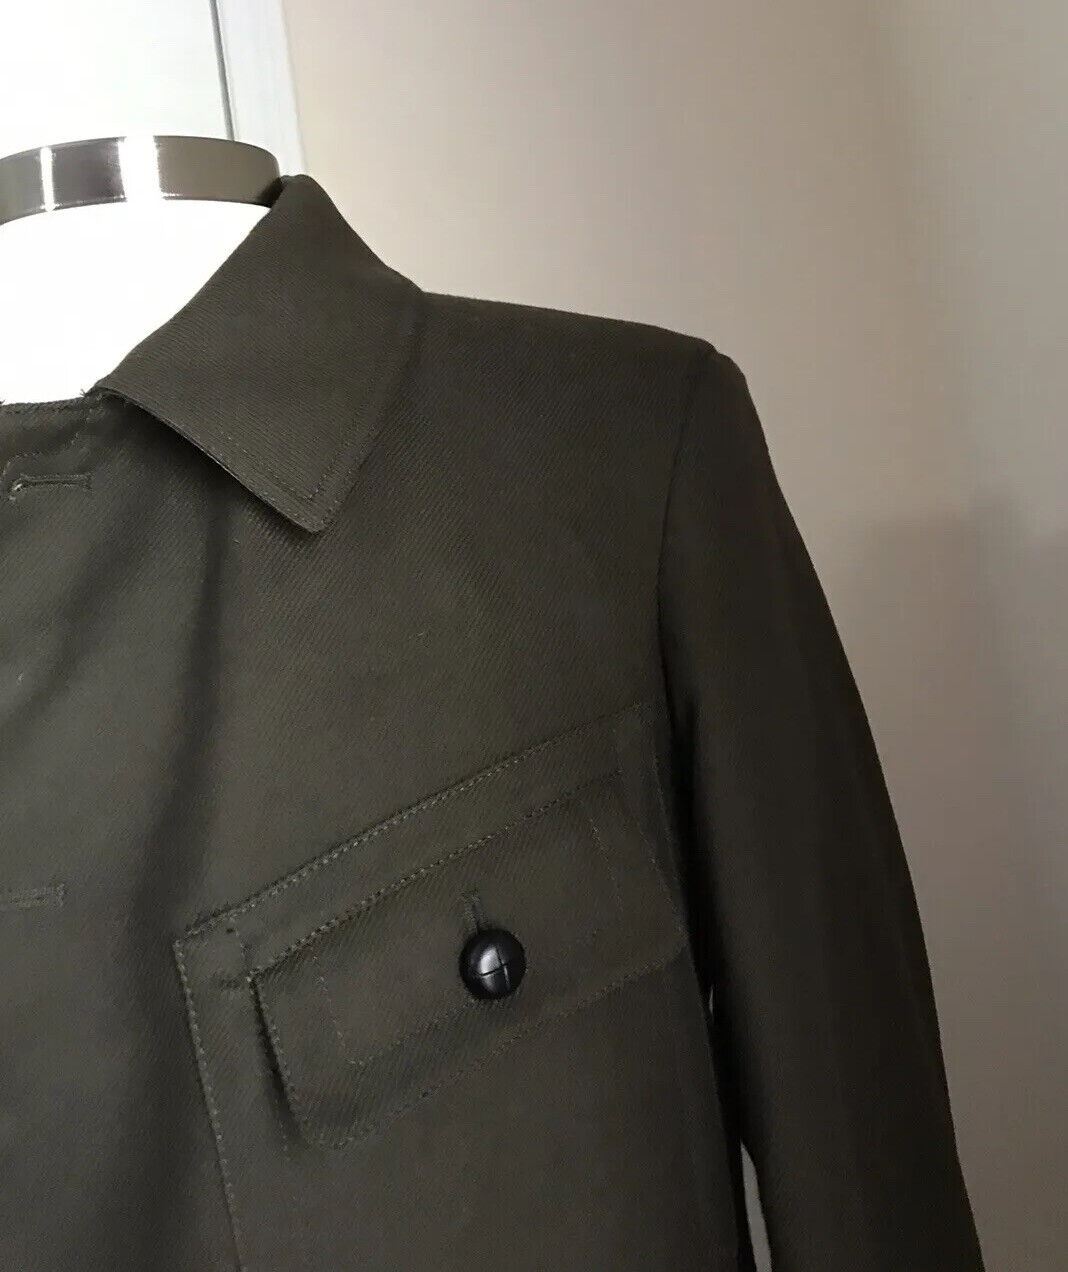 New $2790 Maison Margiela Kaban Faux Fur-Lined Jacket Coat Olive Green 38/48 Ita